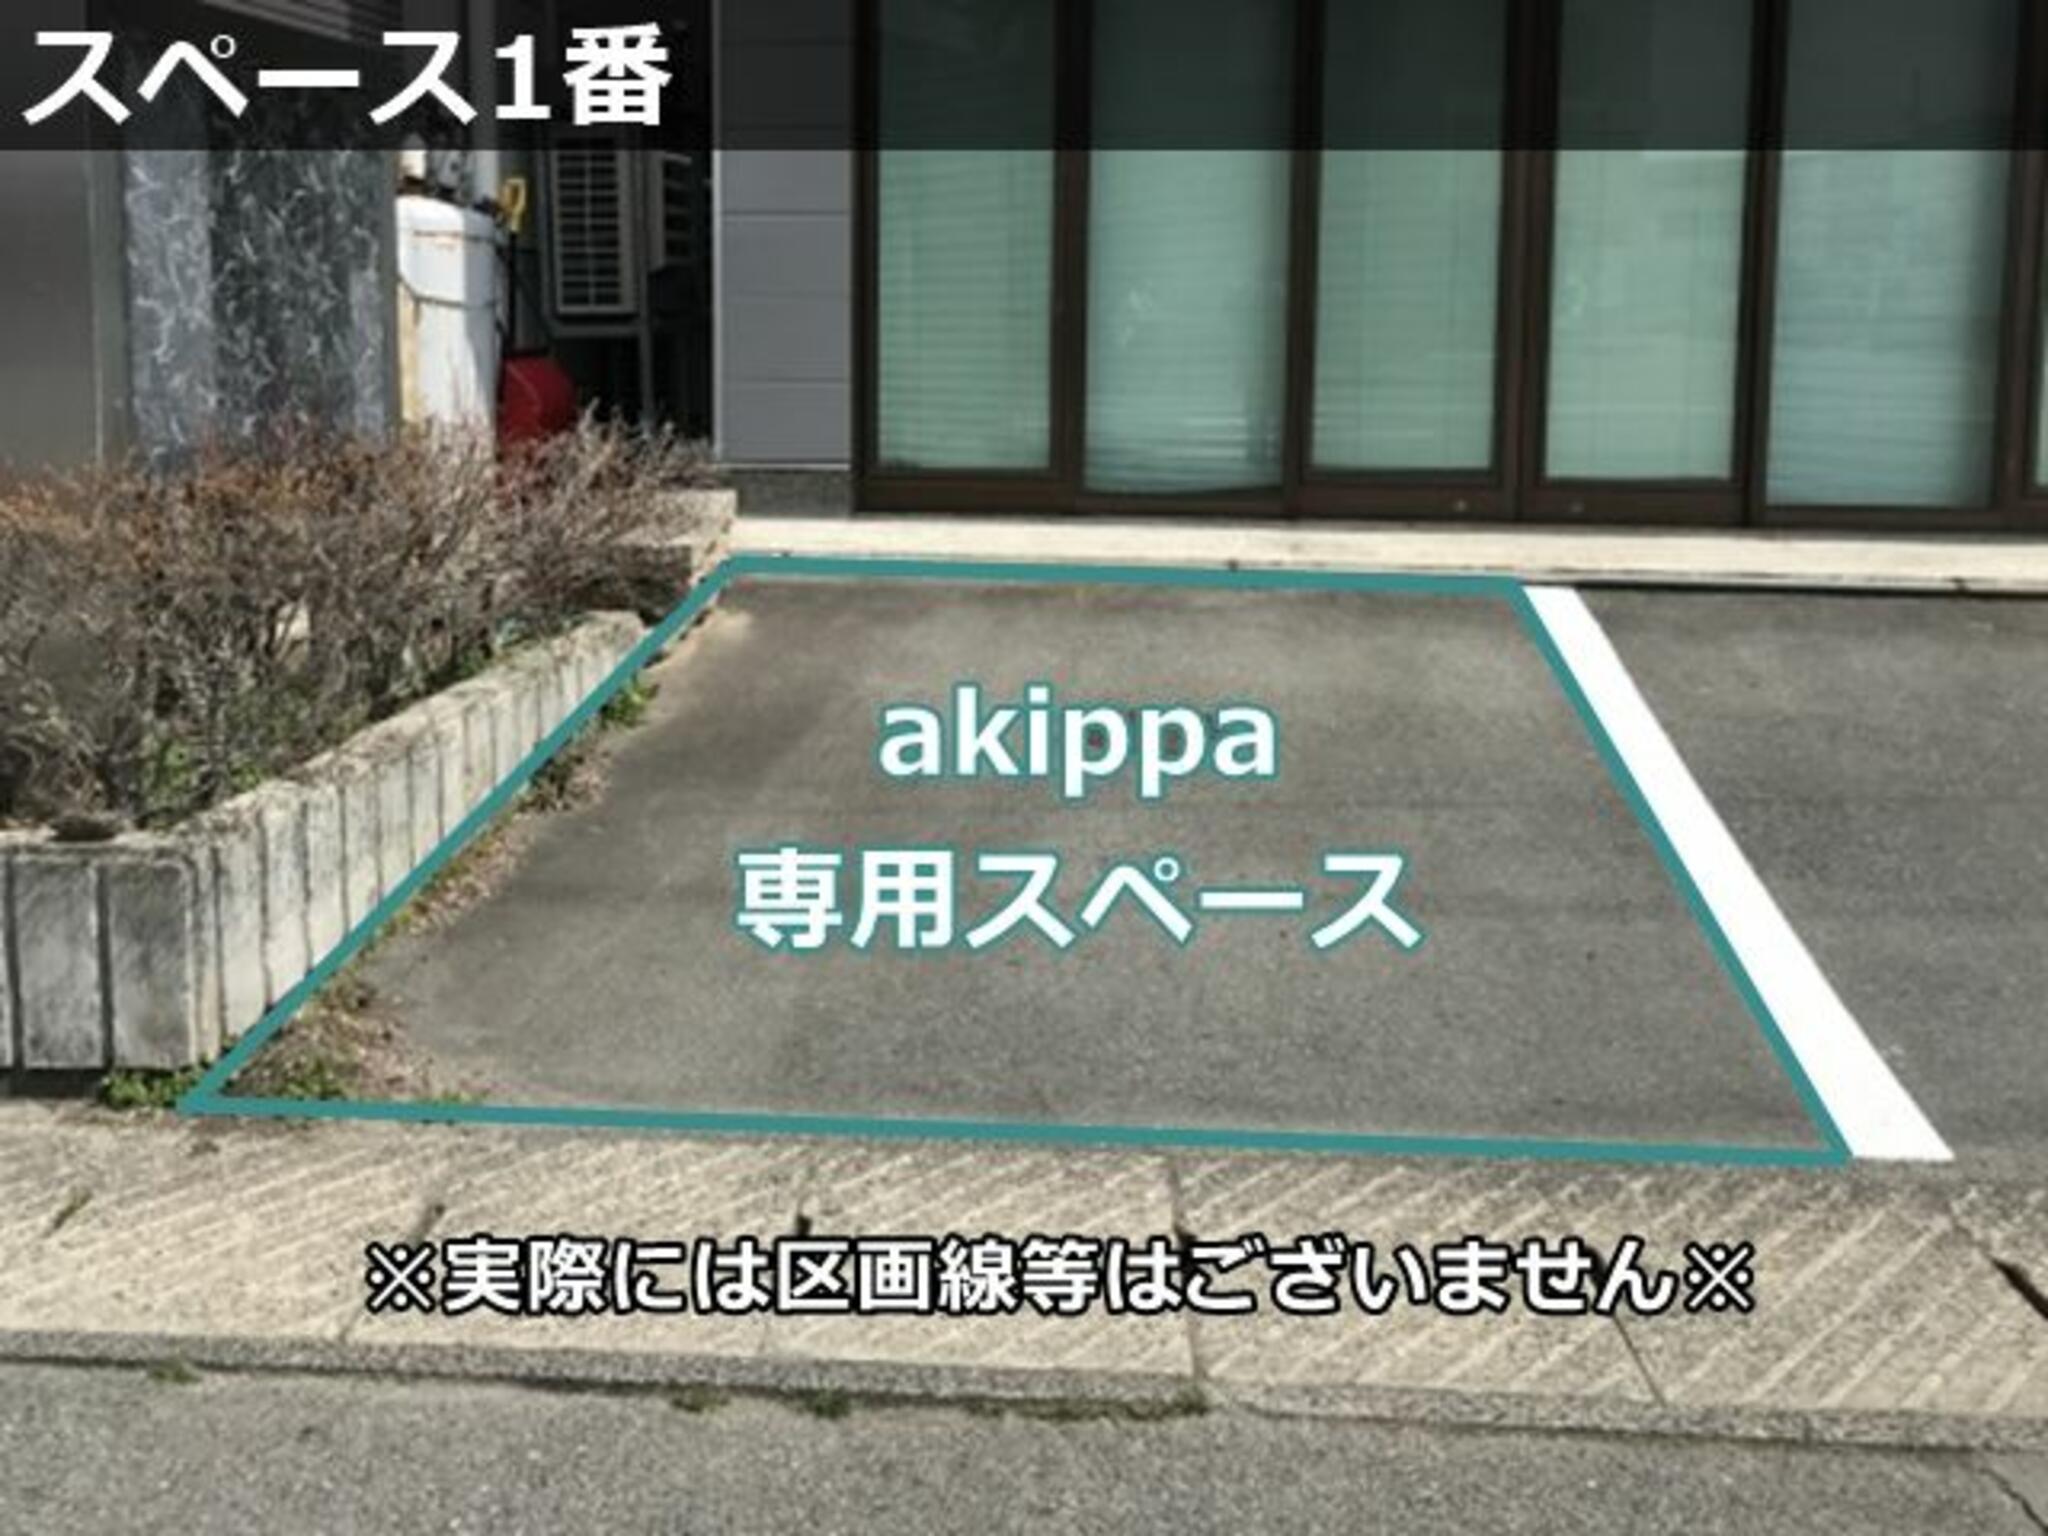 akippa駐車場:山形県山形市薬師町1丁目1-8の代表写真4